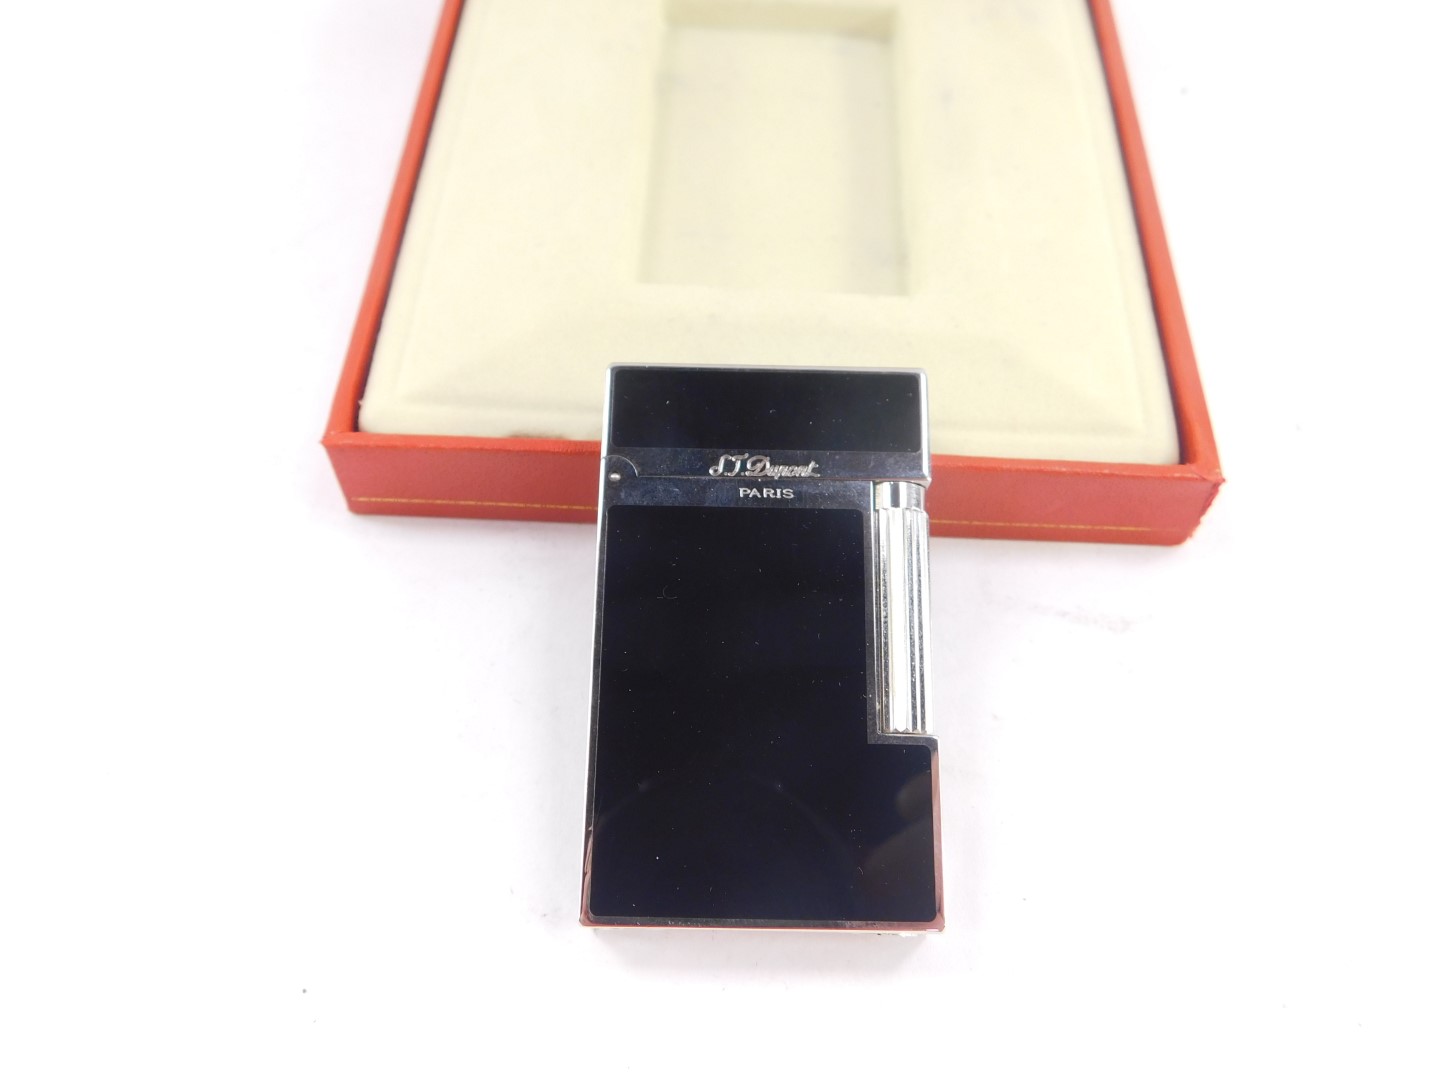 An S T Dupont Poudre D'or Monte pocket lighter, Laque de Chine style plume, L2, 045290, cased with c - Bild 2 aus 4